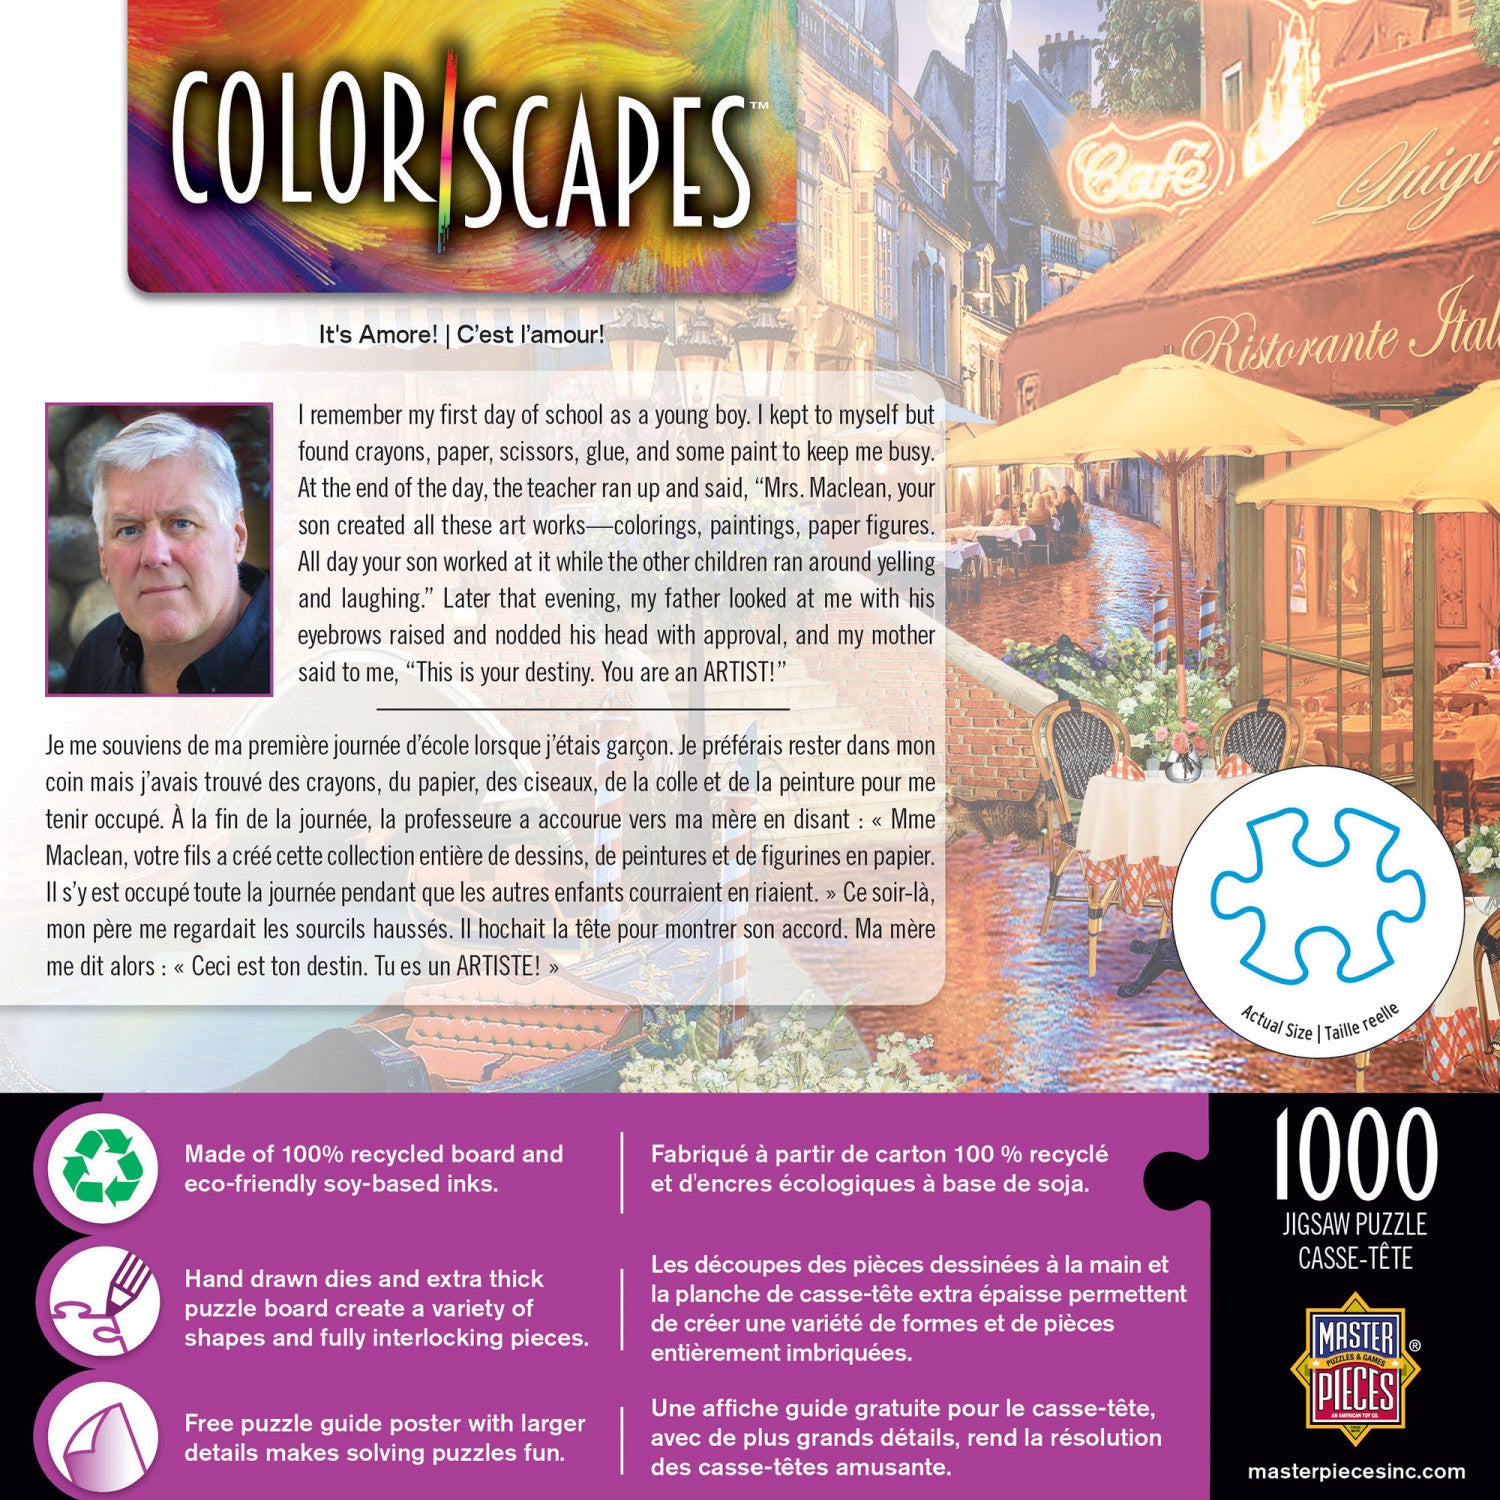 Colorscapes - It's Amore! 1000 Piece Jigsaw Puzzle